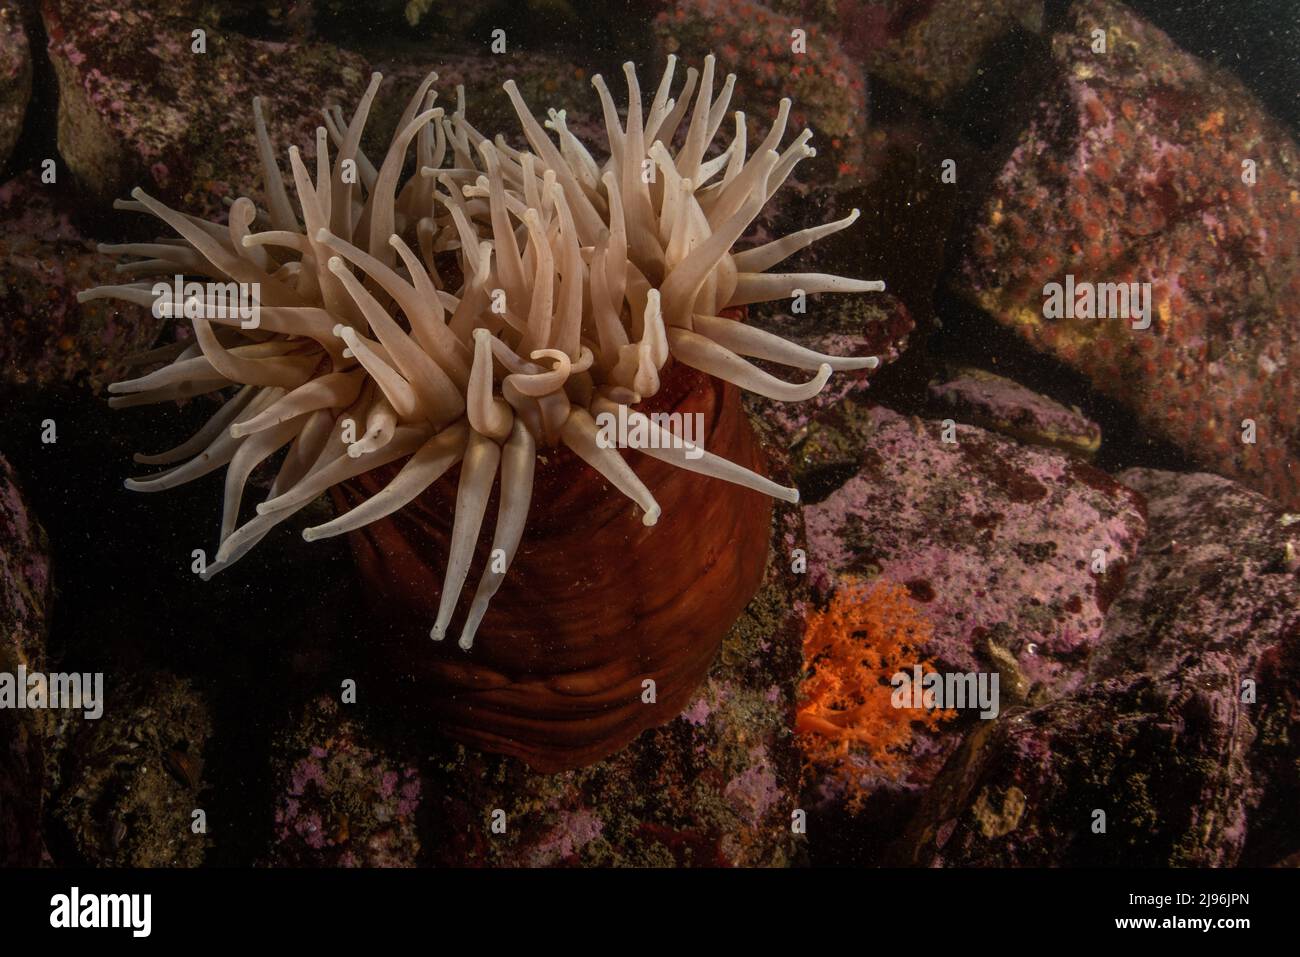 Urticina piscivora, die fischfressende Anemone, sitzt auf einigen Felsen unter Wasser im Pazifischen Ozean in Monterey Bay, Kalifornien, USA, Nordamerika. Stockfoto